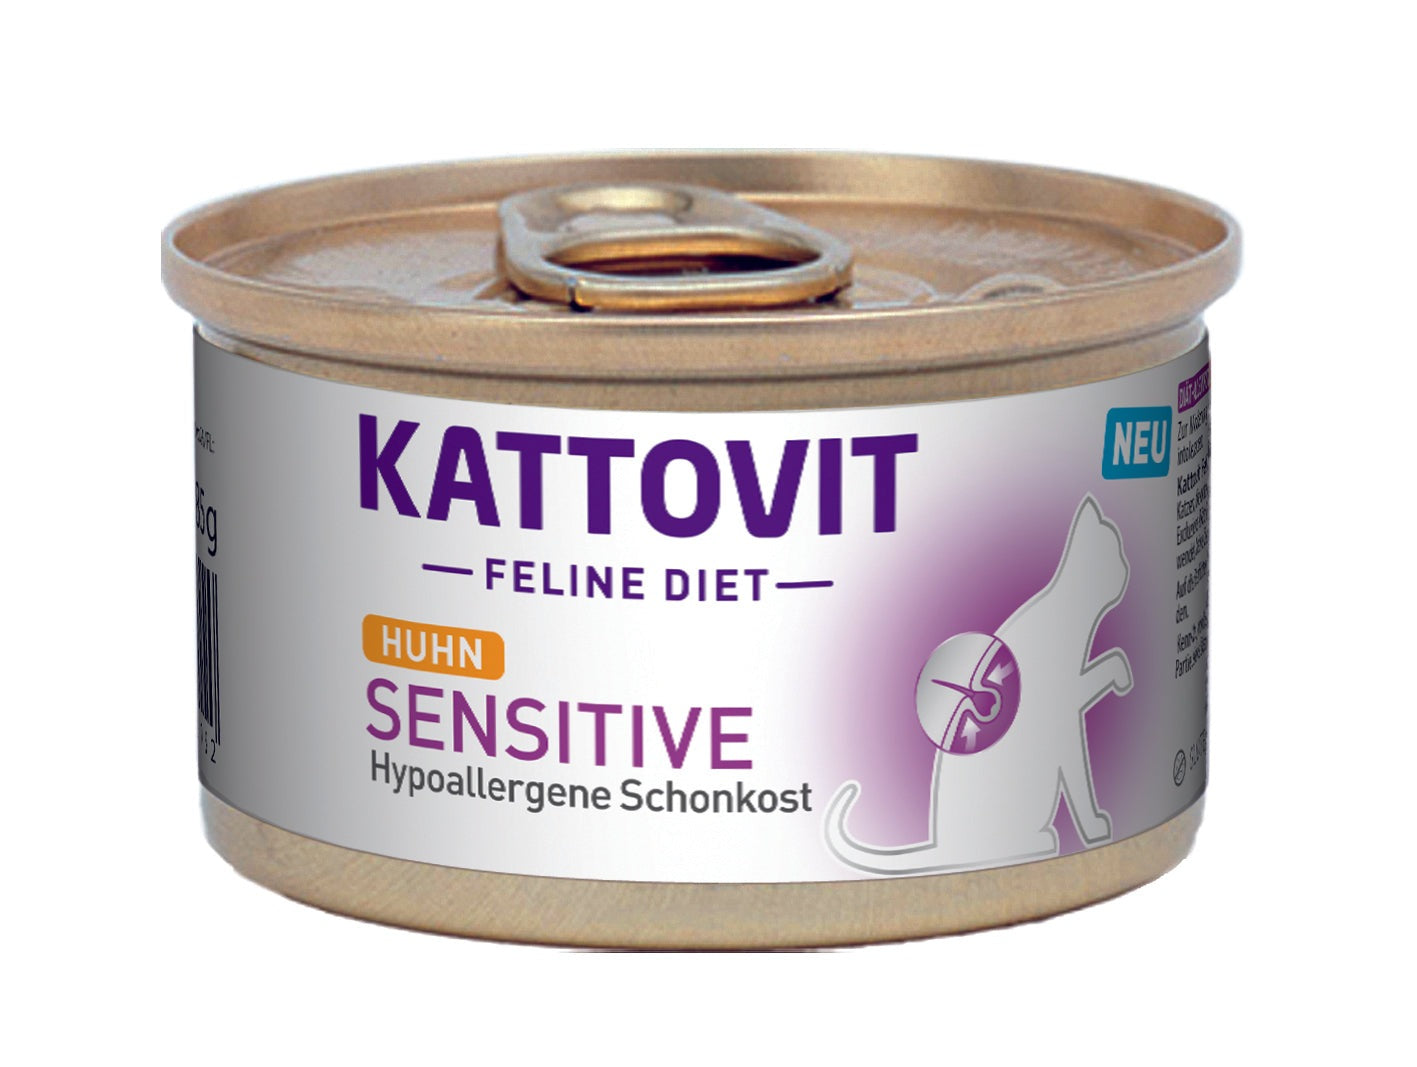 Artikel mit dem Namen Kattovit Feline Diet Sensitive - Hypoallergene Schonkost (D-Rezeptur) im Shop von zoo.de , dem Onlineshop für nachhaltiges Hundefutter und Katzenfutter.